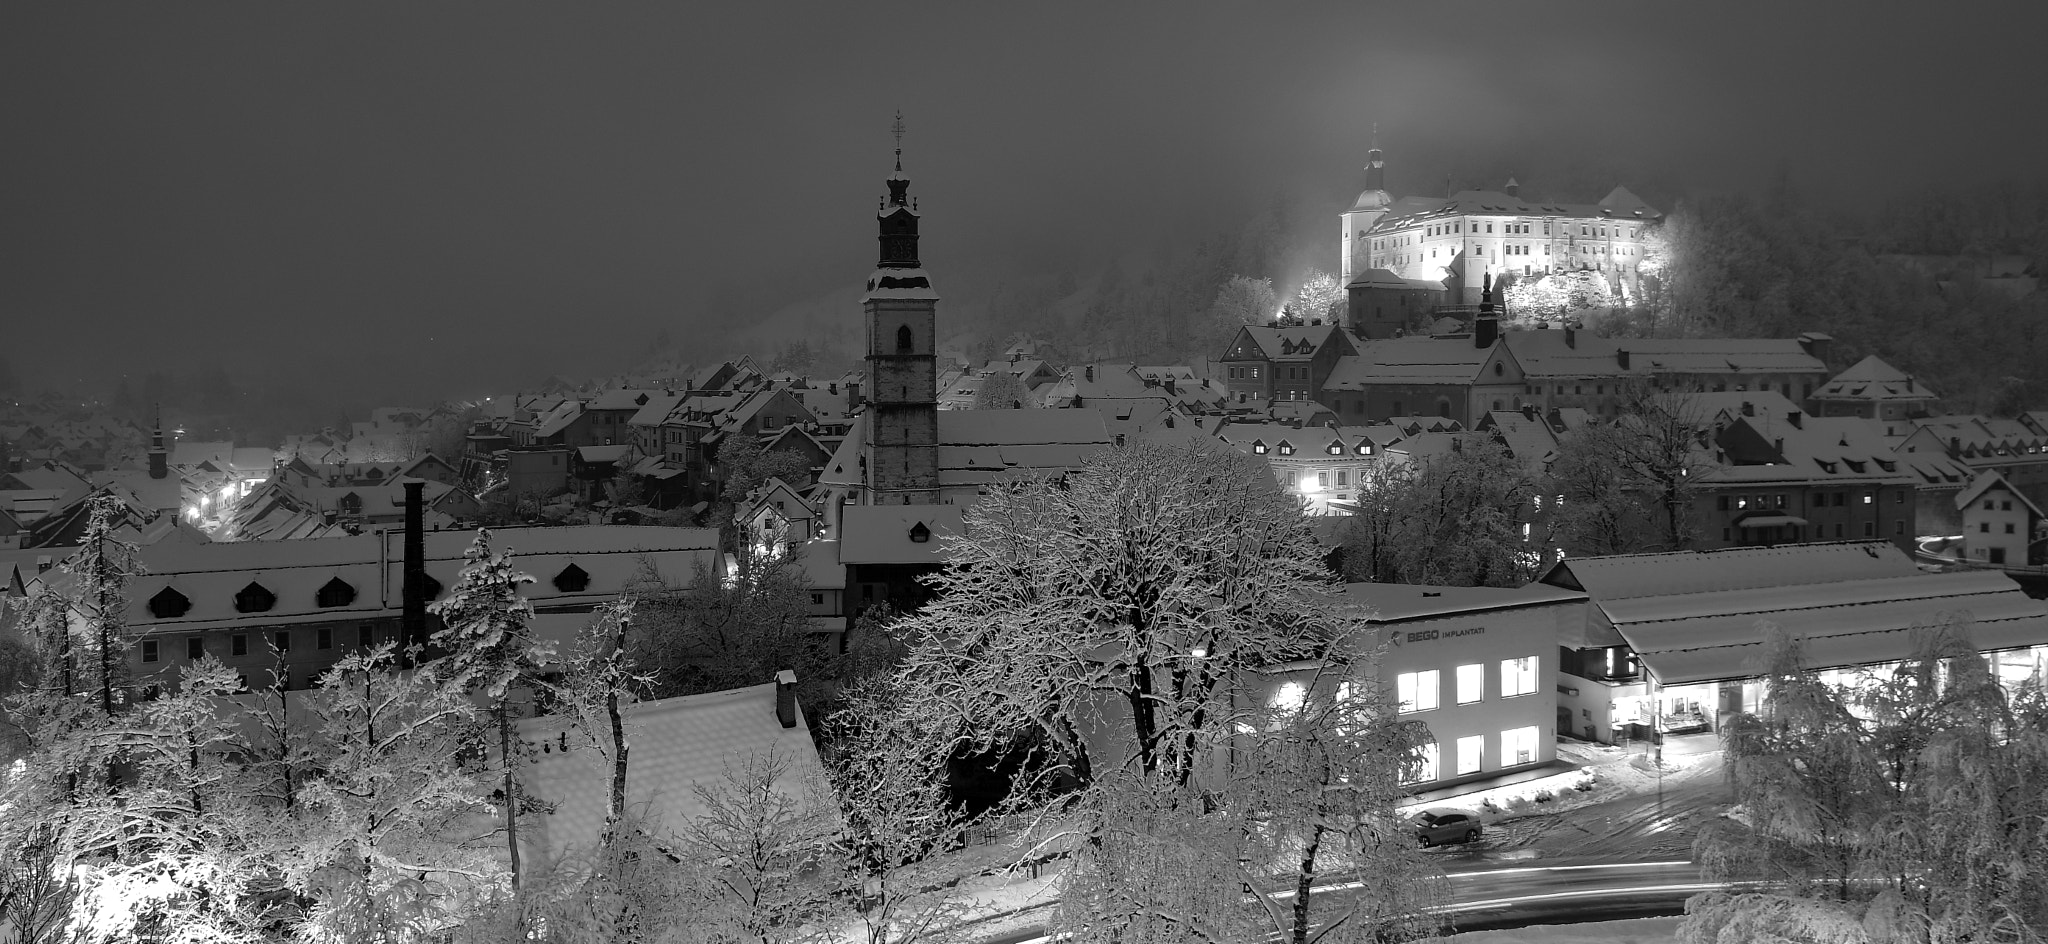 Nikon D500 + Tokina AT-X Pro 11-16mm F2.8 DX sample photo. Evening winter view of Škofja loka photography